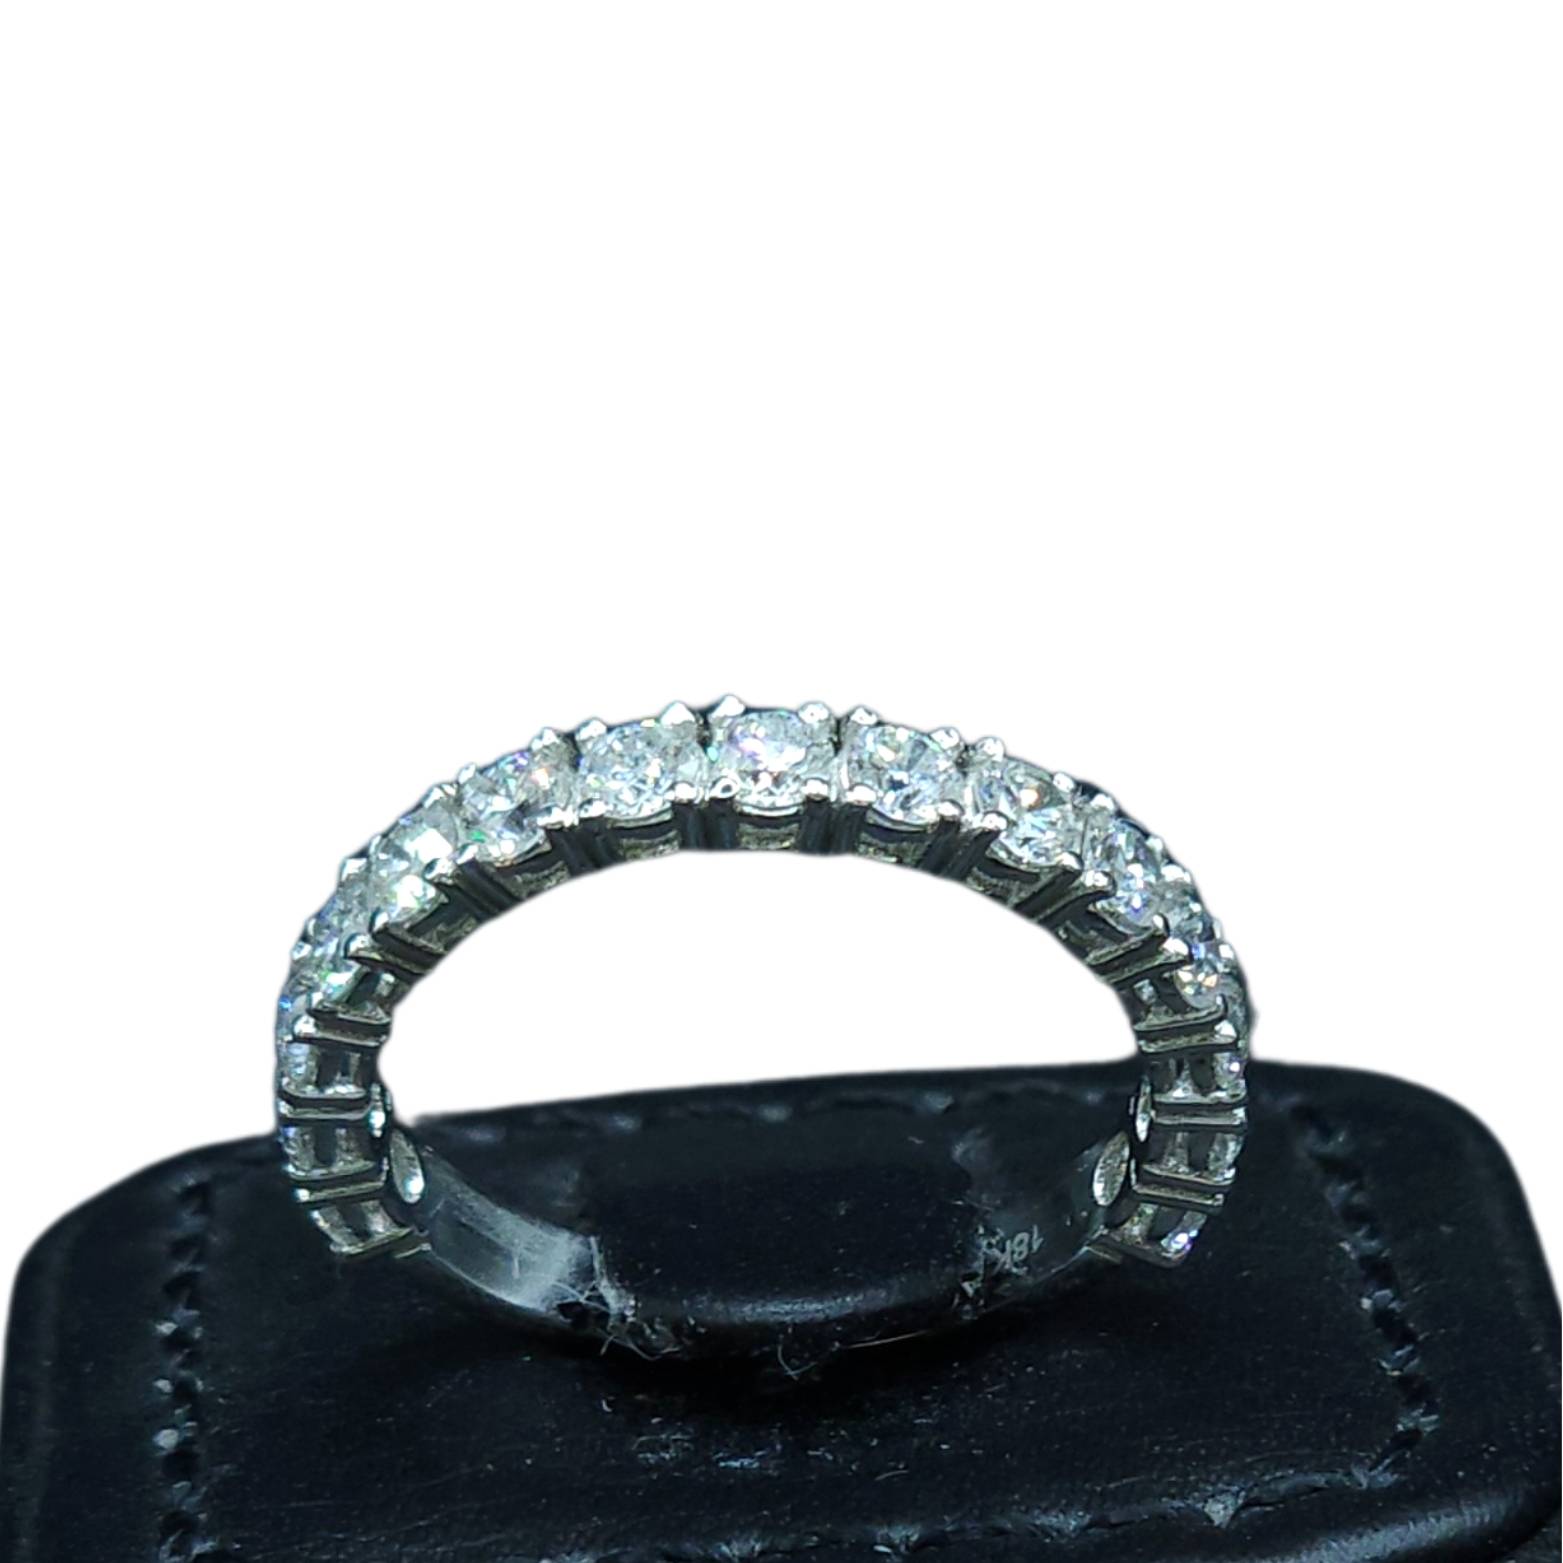 SalikoMall wedding ring